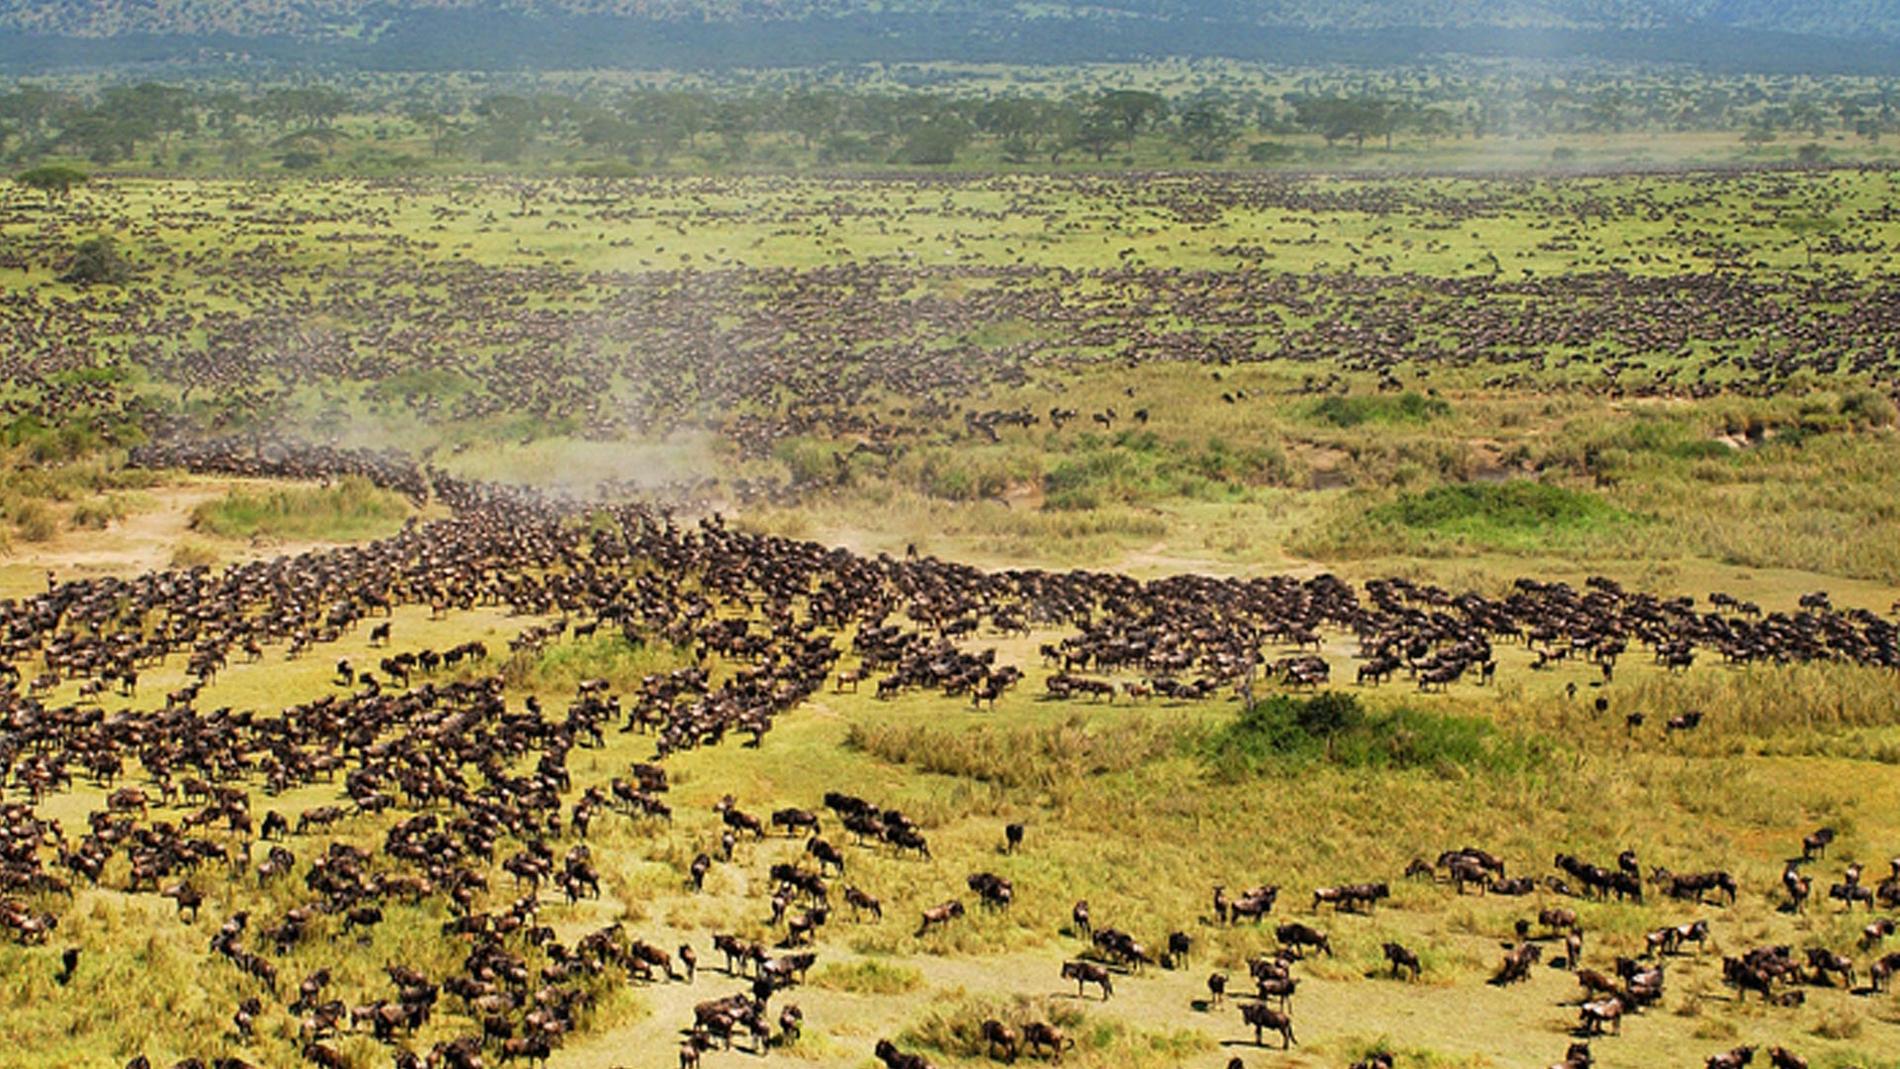 Det vilda djurlivet hotas i den vidsträckta Serengeti-parken, menar naturvänner.